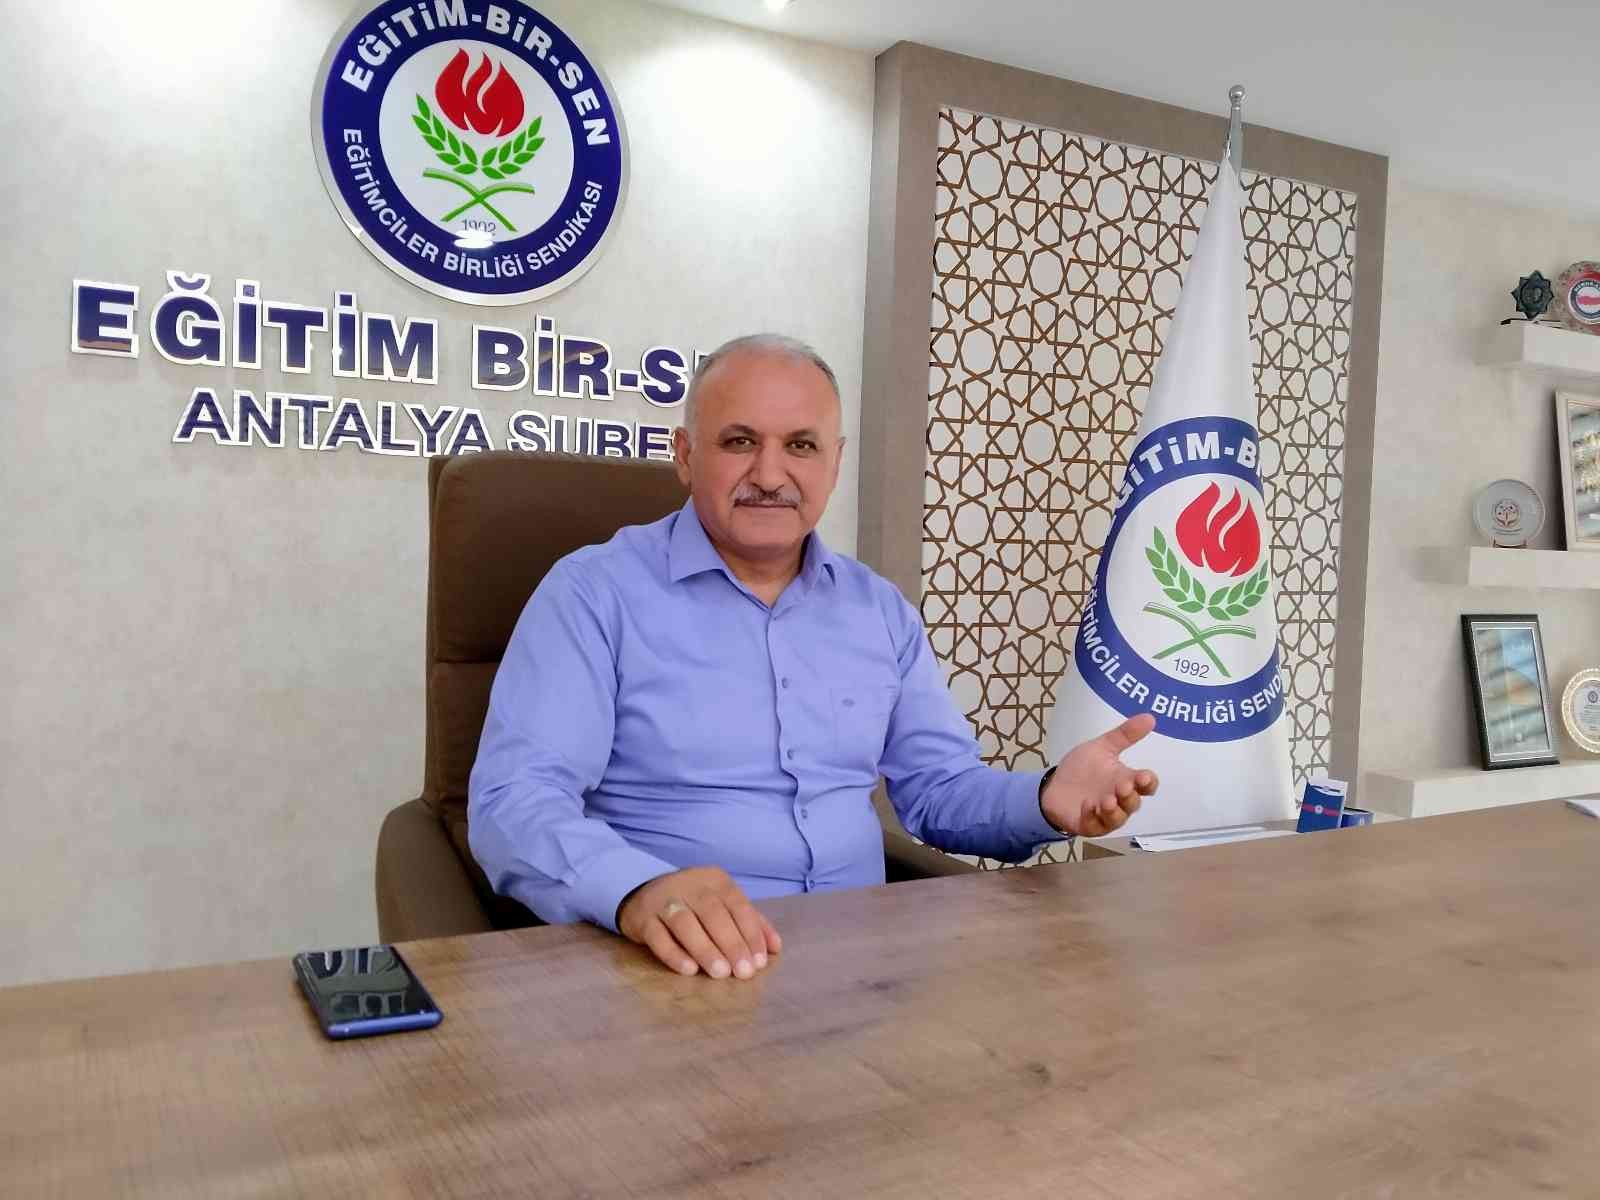 Eğitim Bir Sen Antalya Şube Başkanı Miran: ”Fırsat eşitliği için okullara kaynak aktarılmalı” #antalya